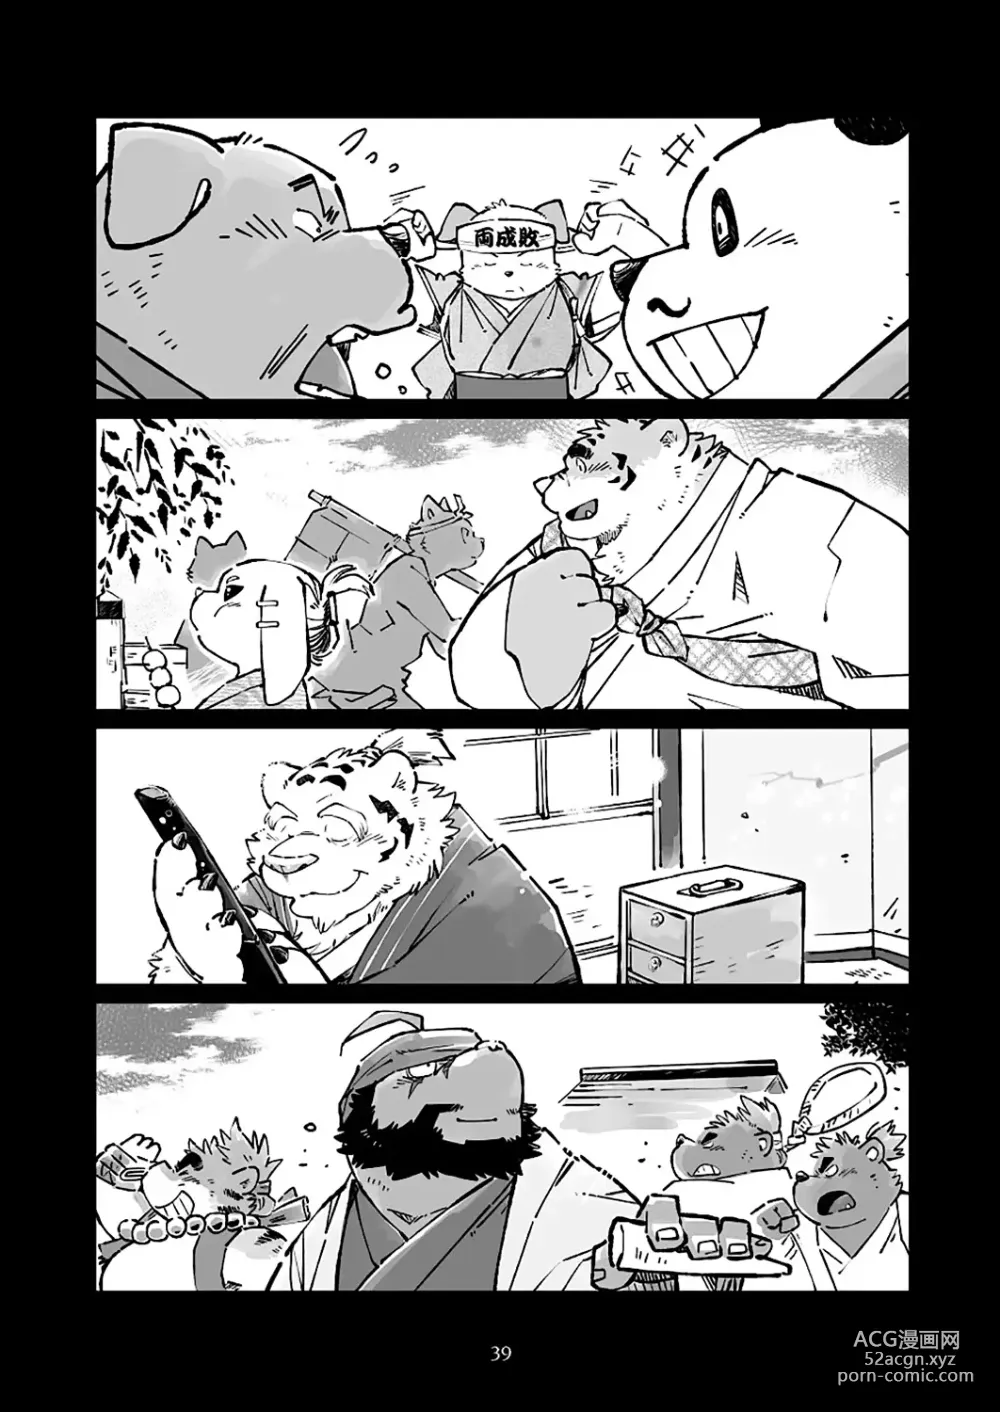 Page 39 of doujinshi 狗津原细见